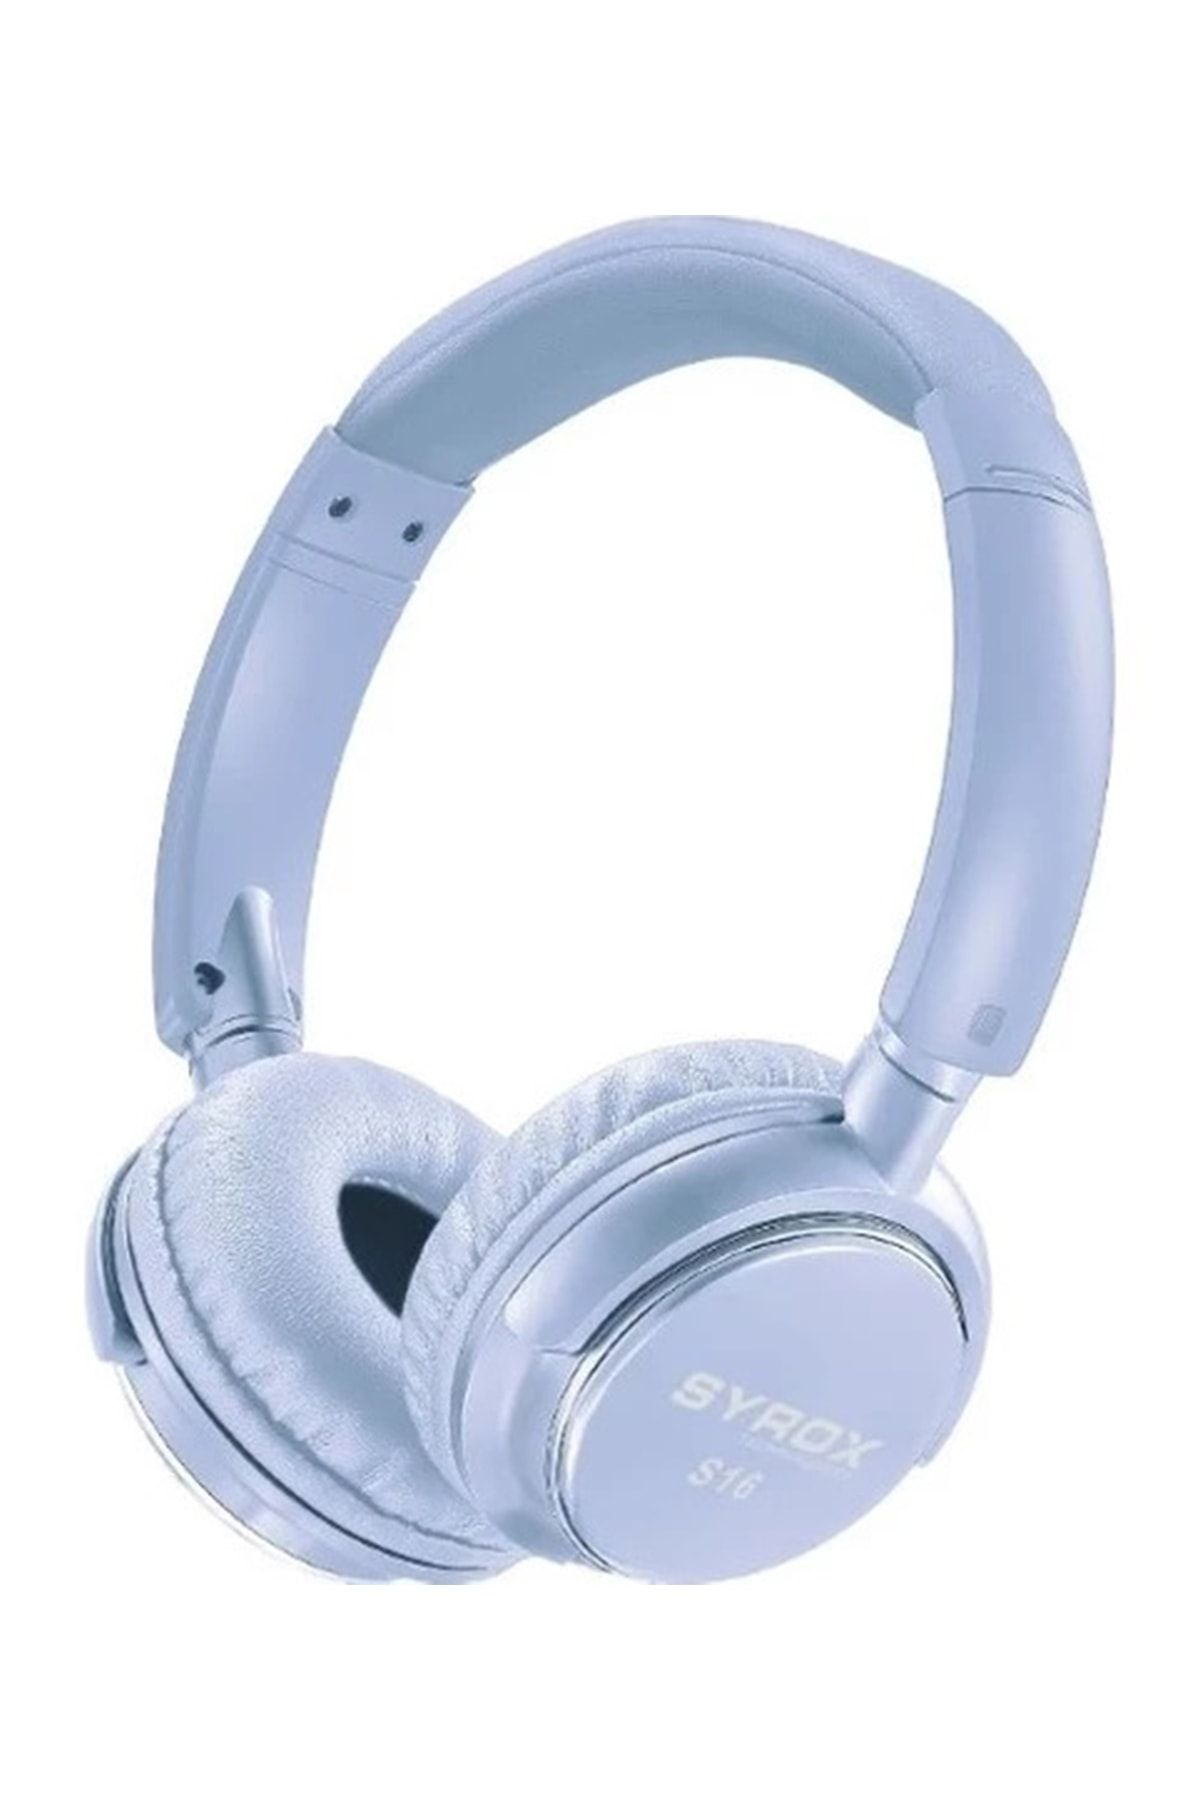 Syrox Mavi Kablosuz Bluetooth Kulaküstü Kulaklık